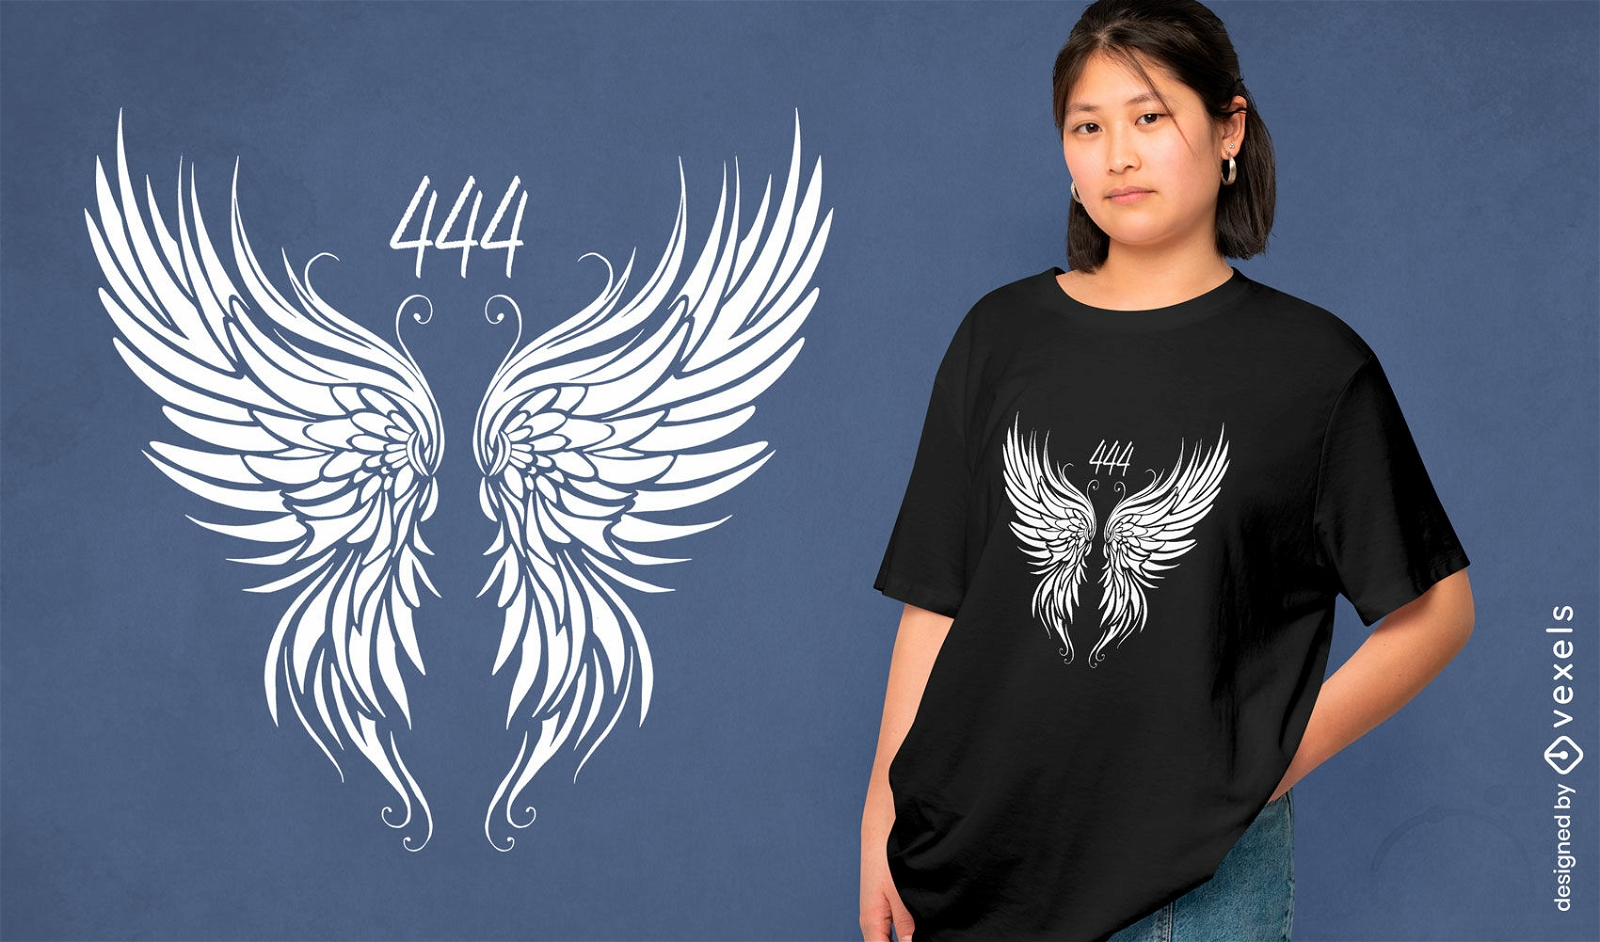 Diseño de camiseta con número de alas angelicales.